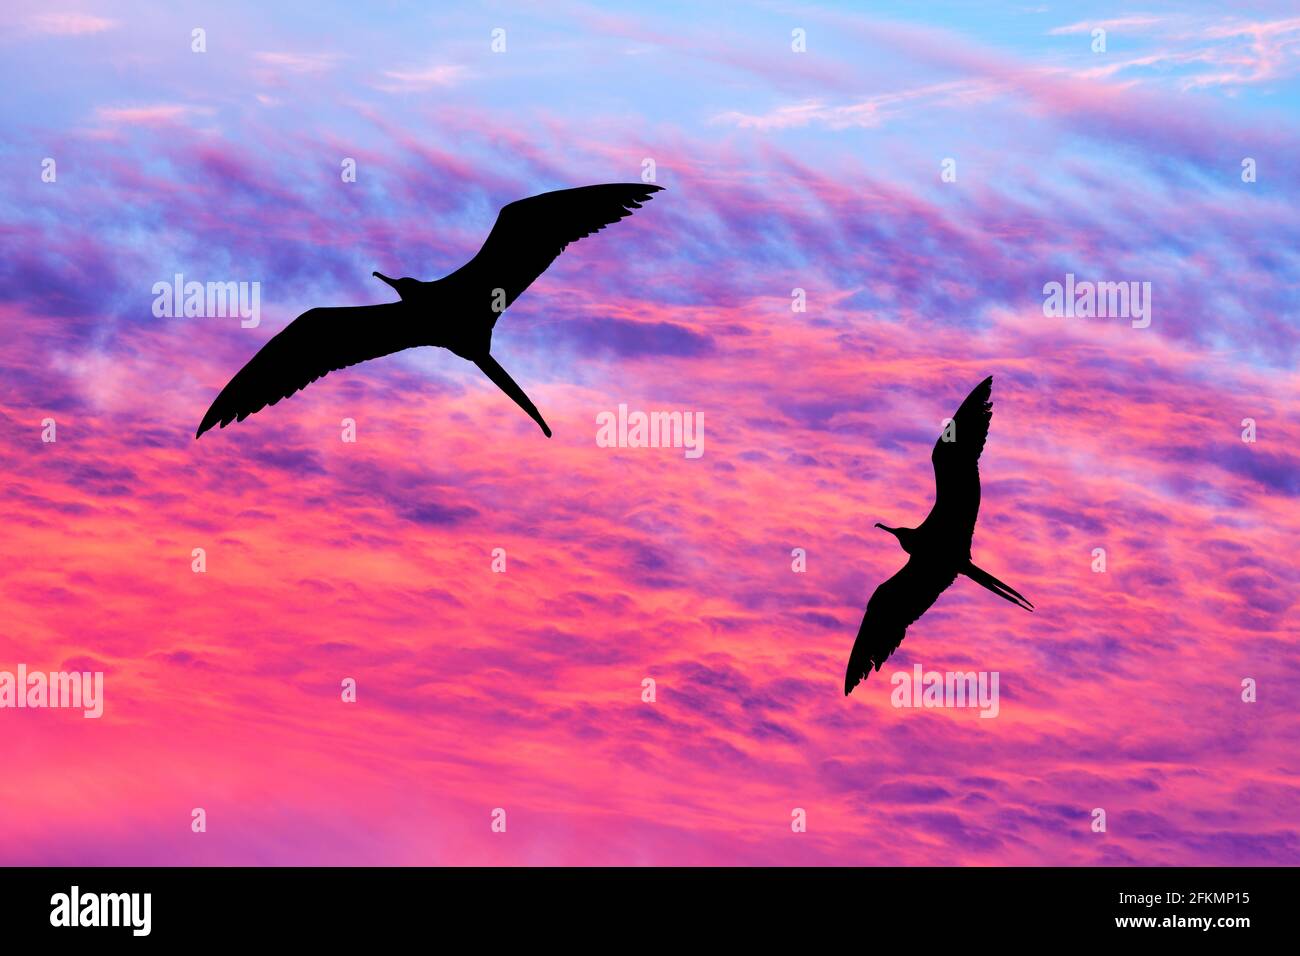 Deux oiseaux volées avec des ailes étalées silhouetté contre UN Ciel de coucher de soleil aux couleurs vives Banque D'Images